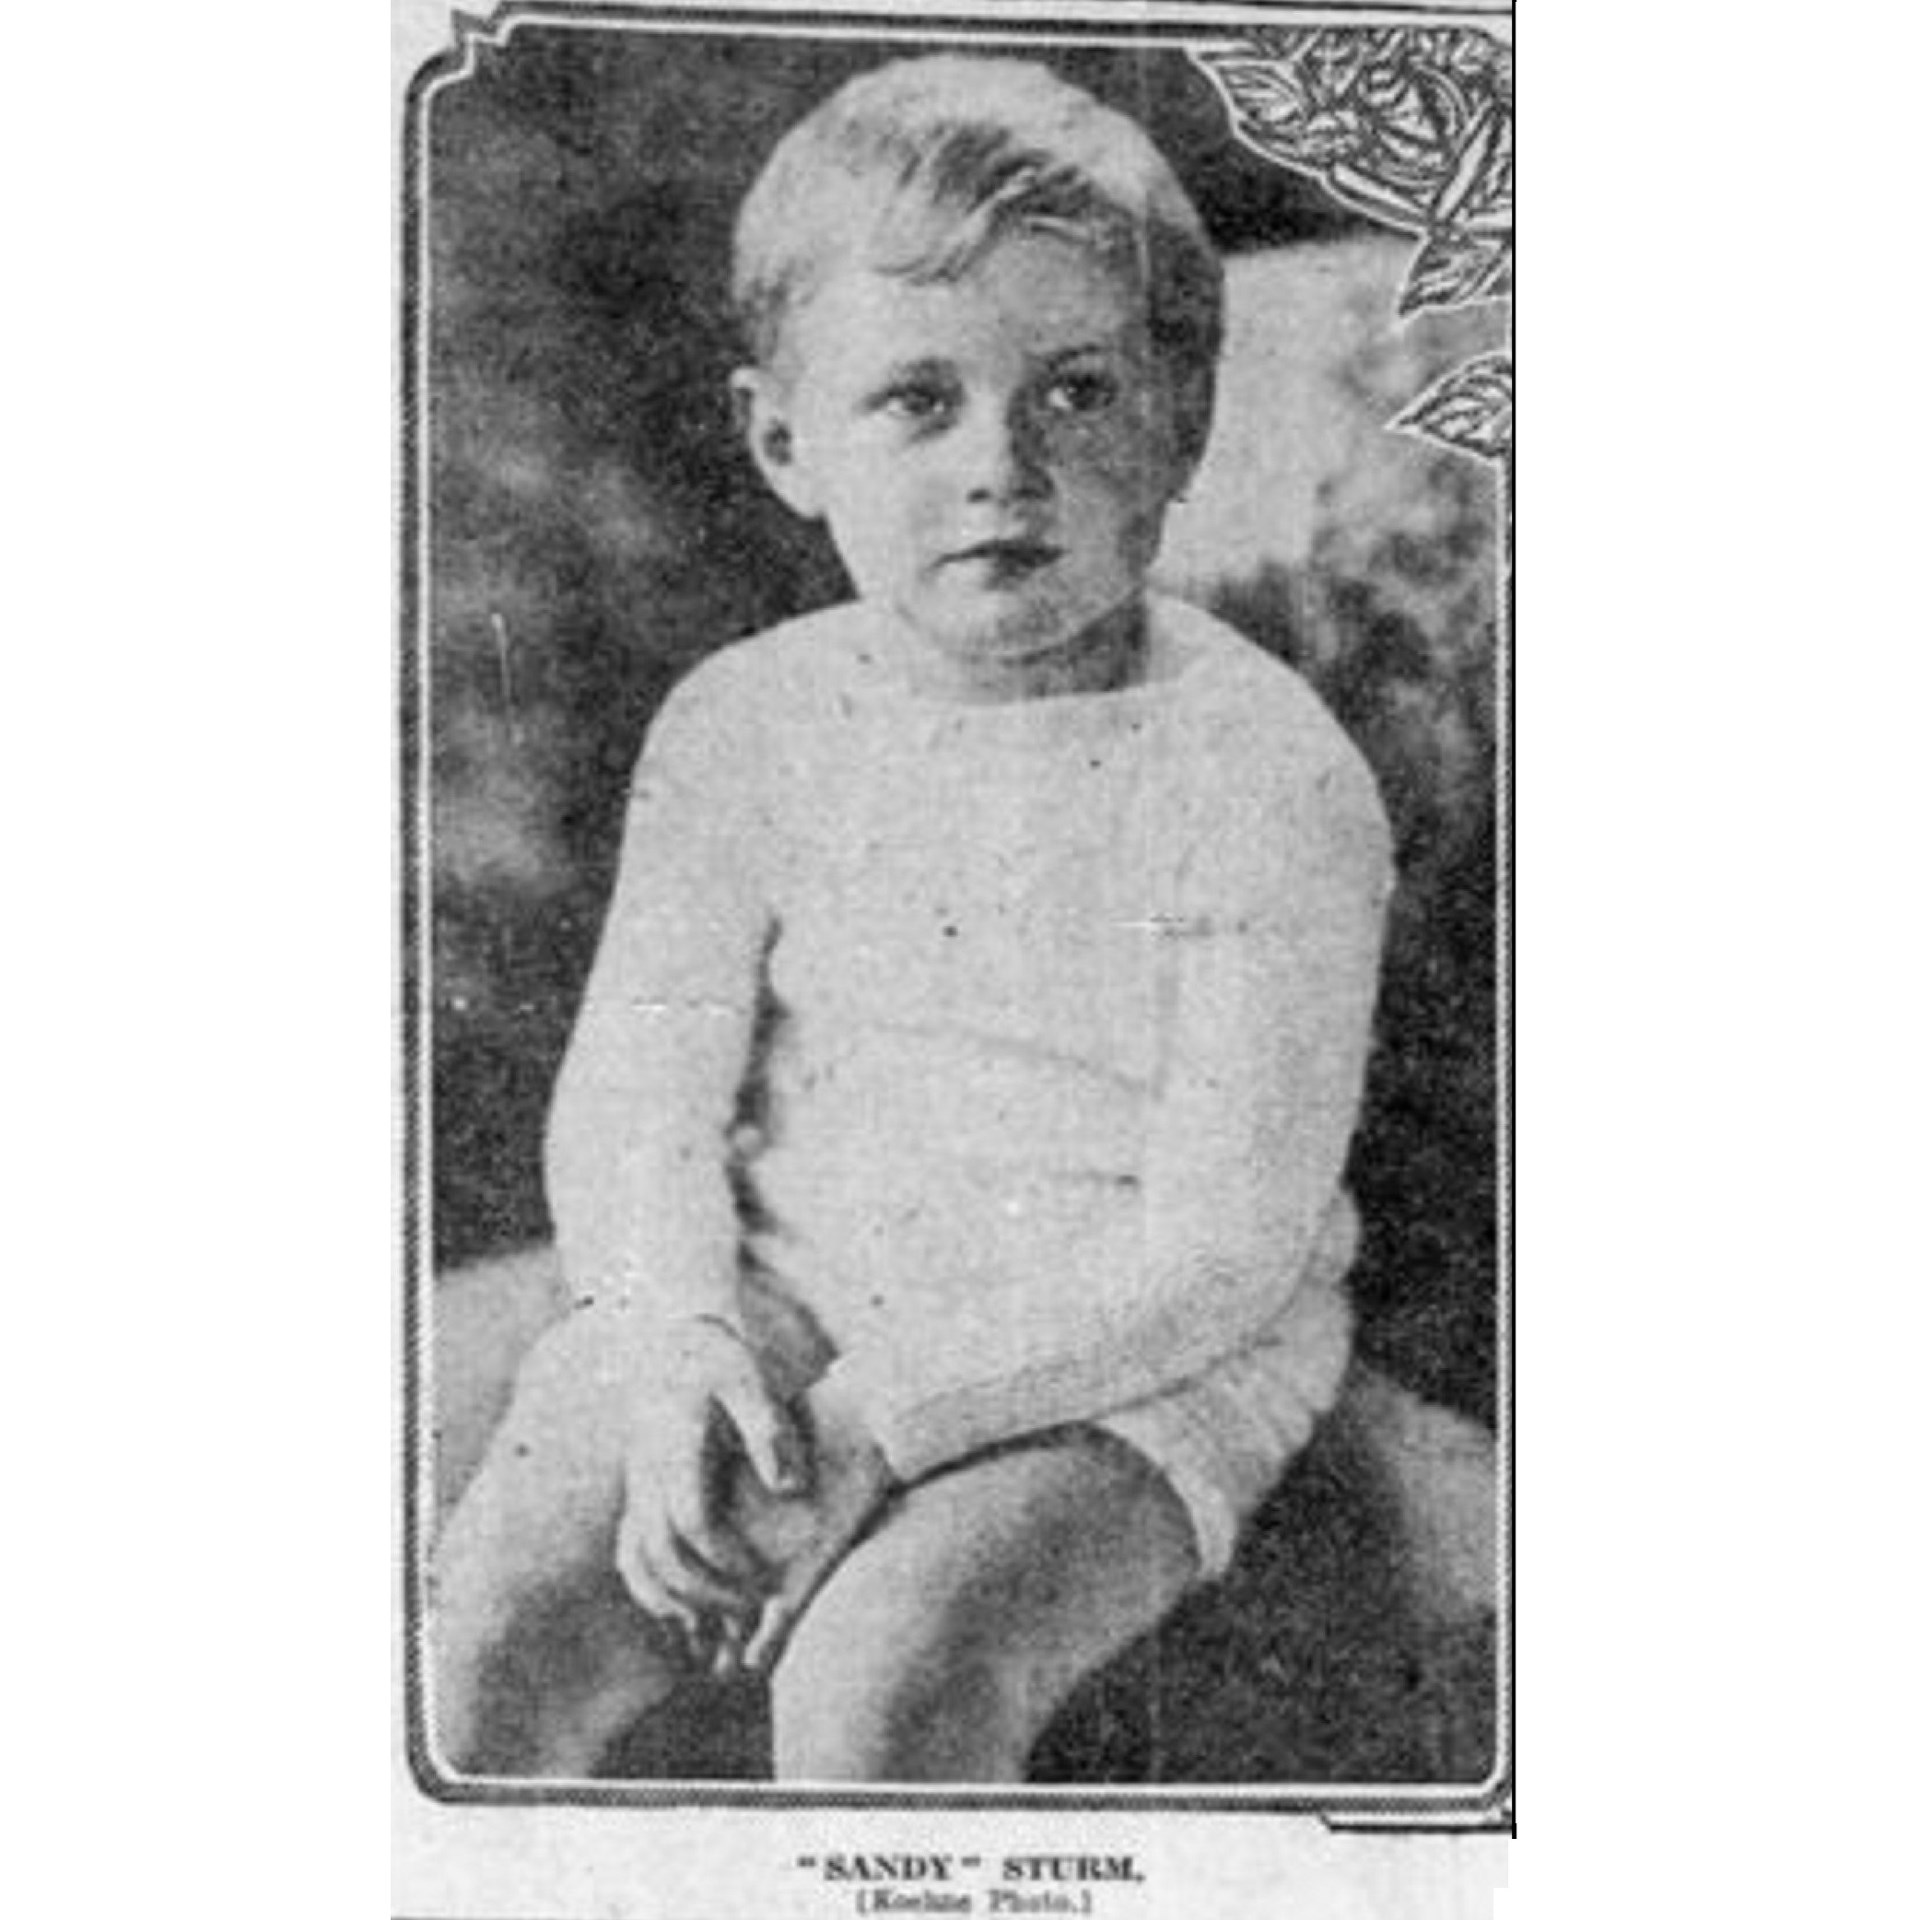 Alexander McCormick Sturm baby picture portrait vintage